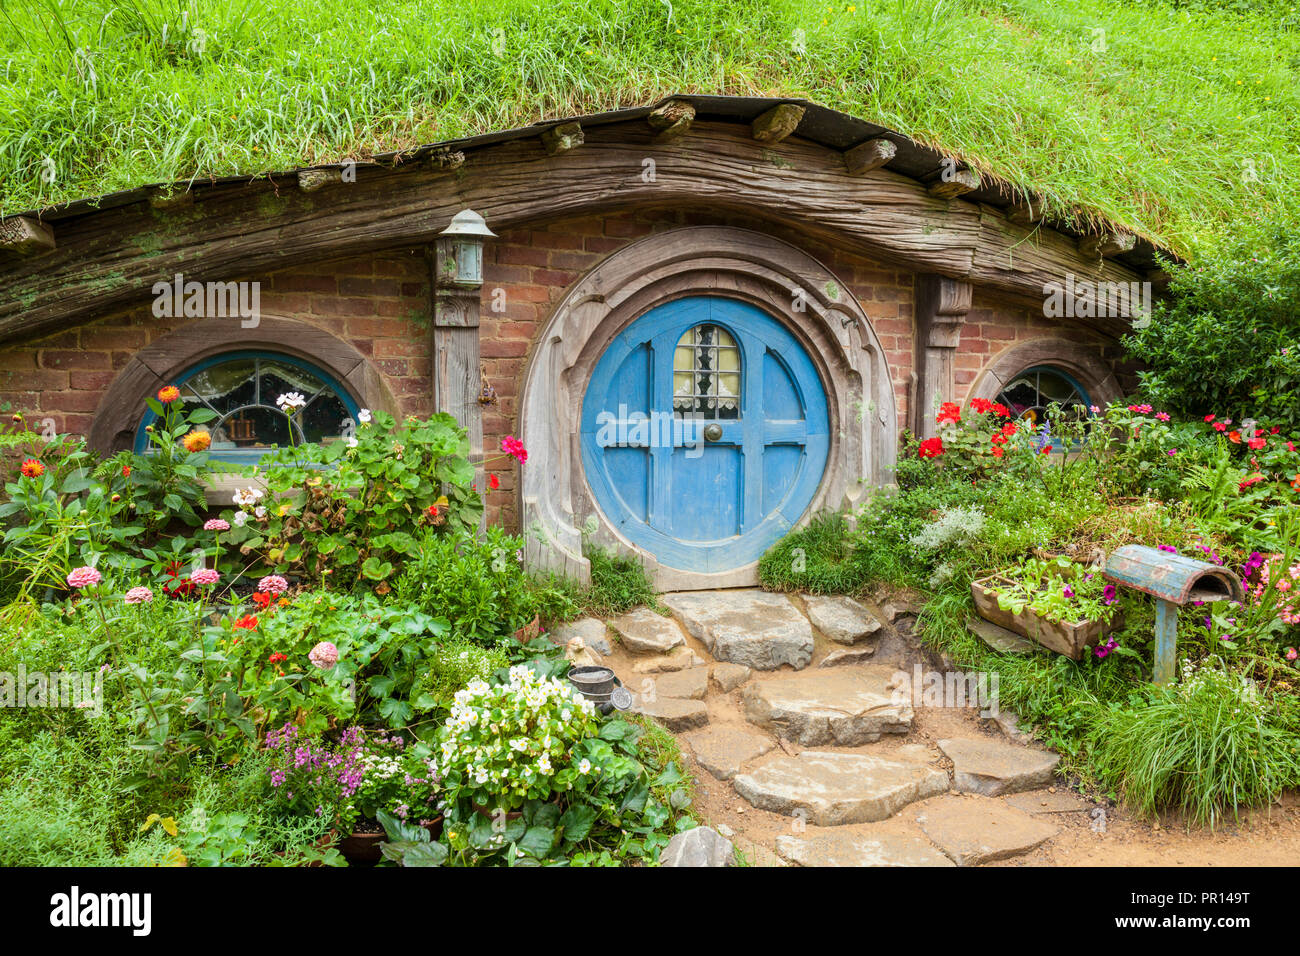 Hobbiton, portes en bois des trous de Hobbit dans le village fictif de film, Hobbiton Matamata, île du Nord, Nouvelle-Zélande, Pacifique Banque D'Images